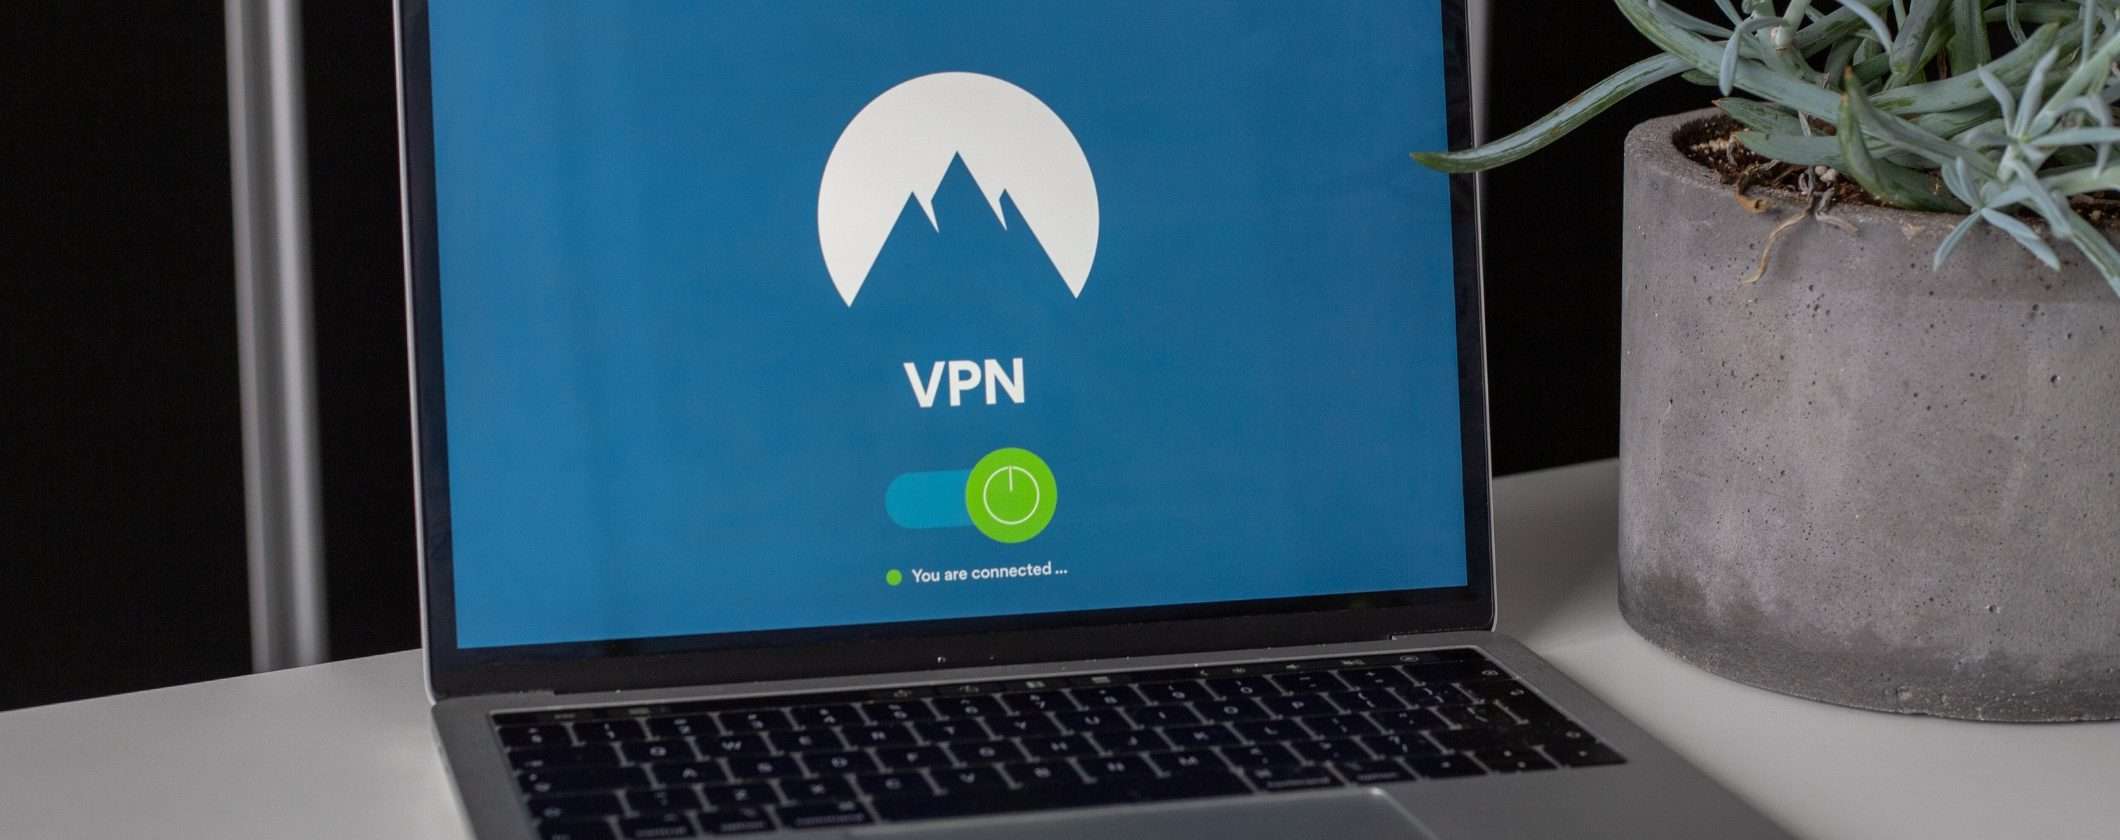 Server VPN virtuali vs fisici: differenze e impatto su sicurezza e prestazioni